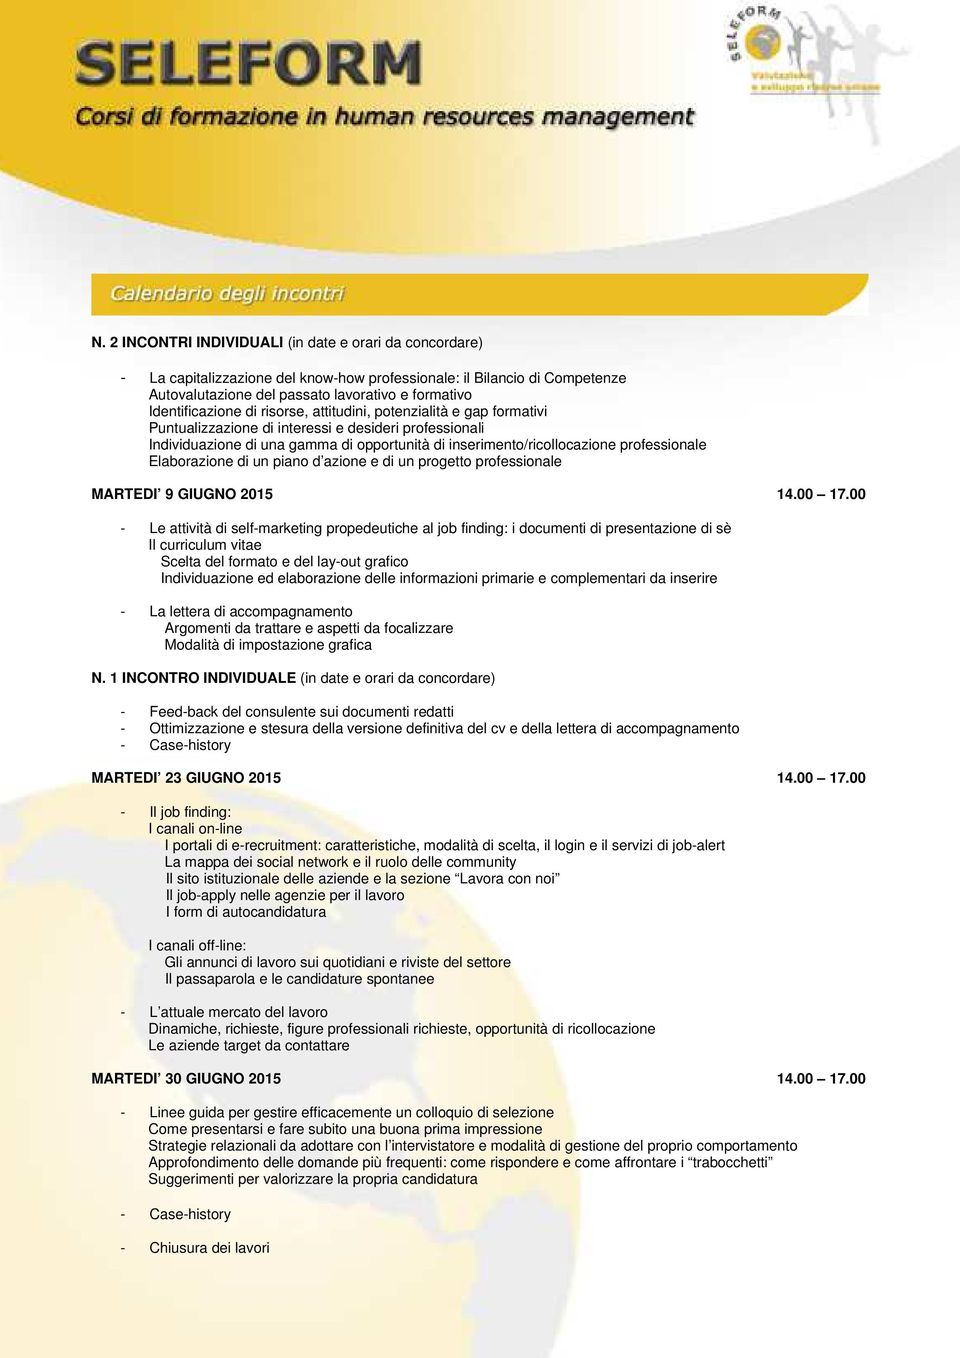 professionale Elaborazione di un piano d azione e di un progetto professionale MARTEDI 9 GIUGNO 2015 14.00 17.